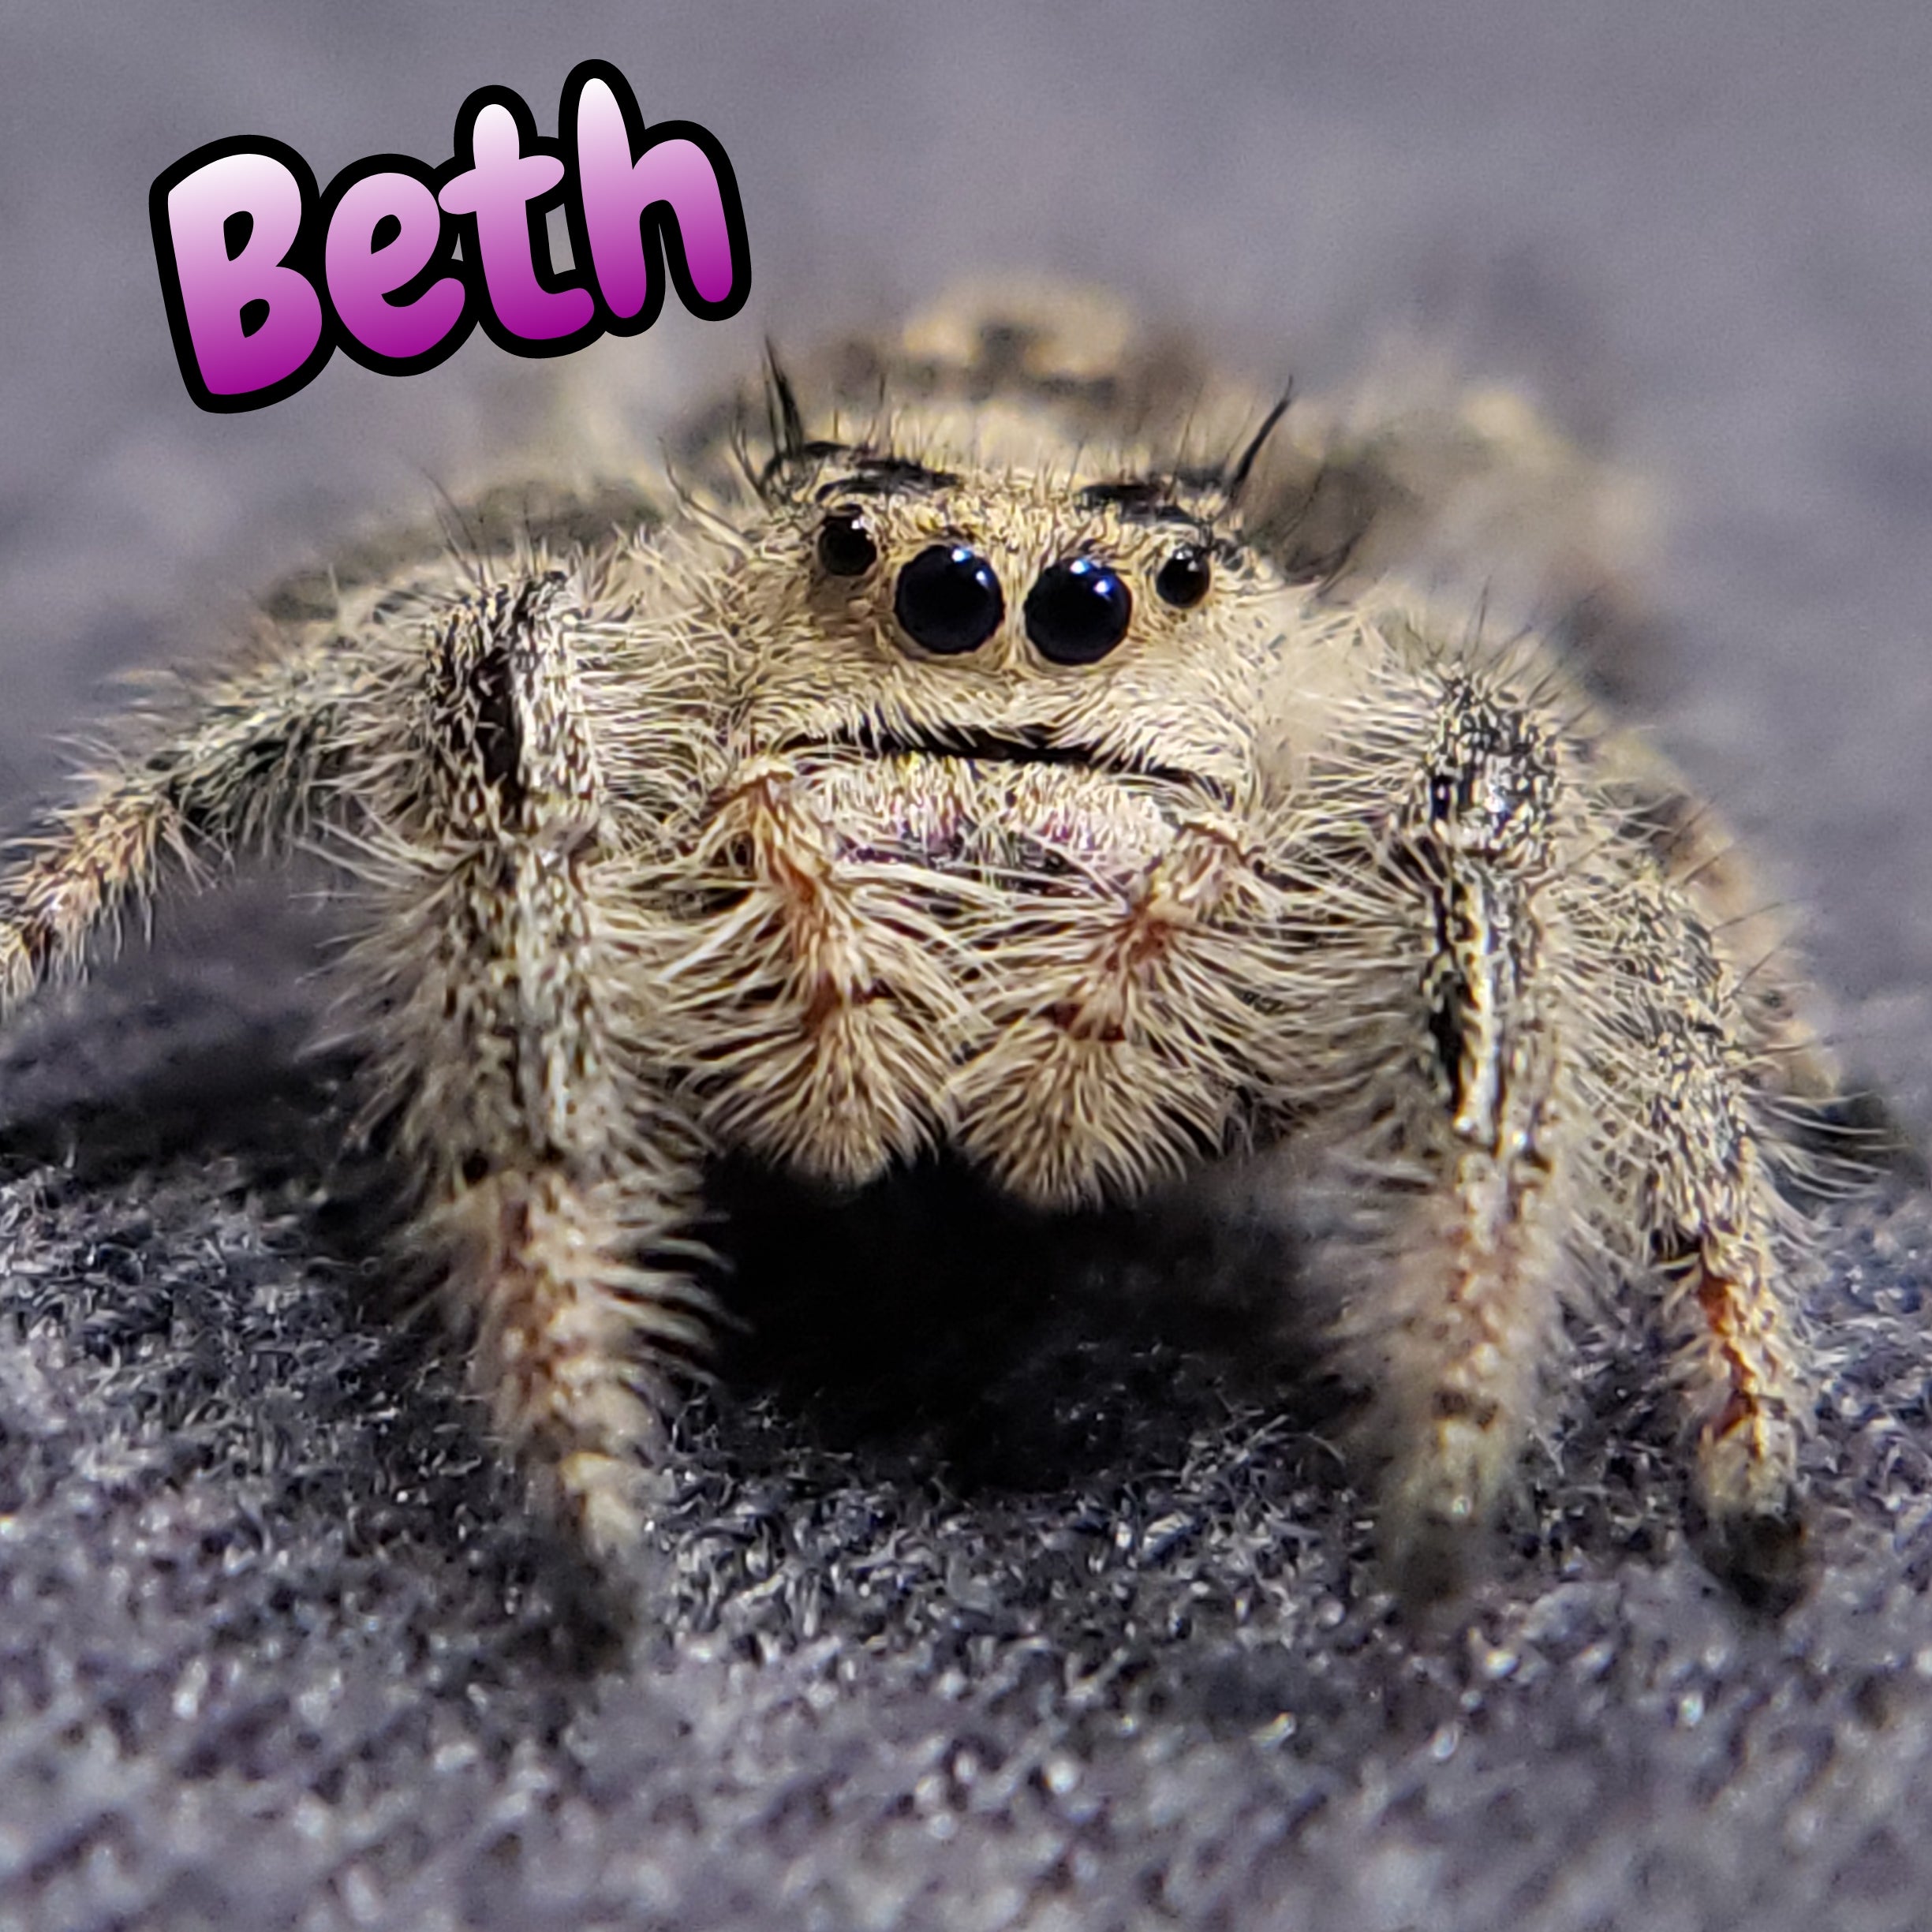 Regal Jumping Spider "Beth"